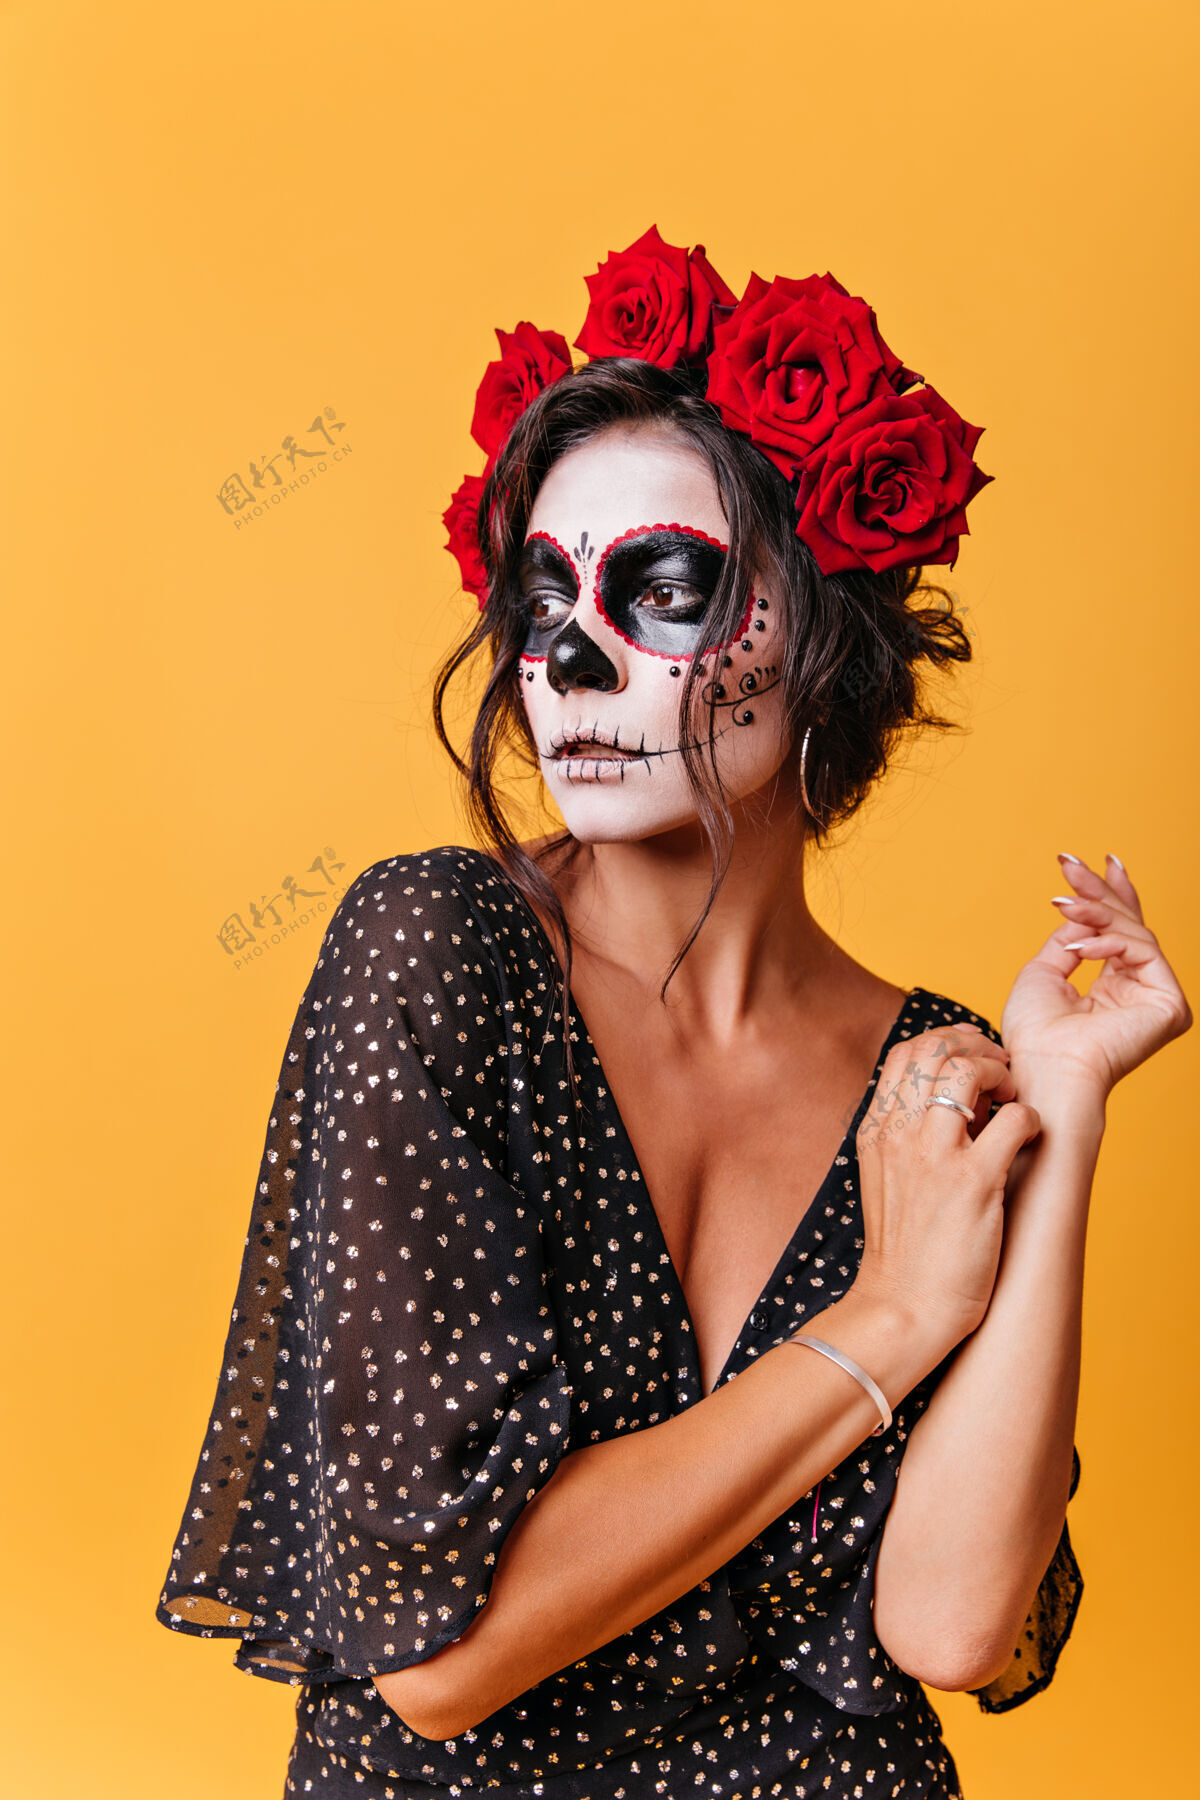 邪恶一幅卷曲的女人的肖像 头发上插着红色的大玫瑰 神秘地看着远处的橙色墙壁来自墨西哥的女孩模特 在万圣节化妆人物魔鬼肖像